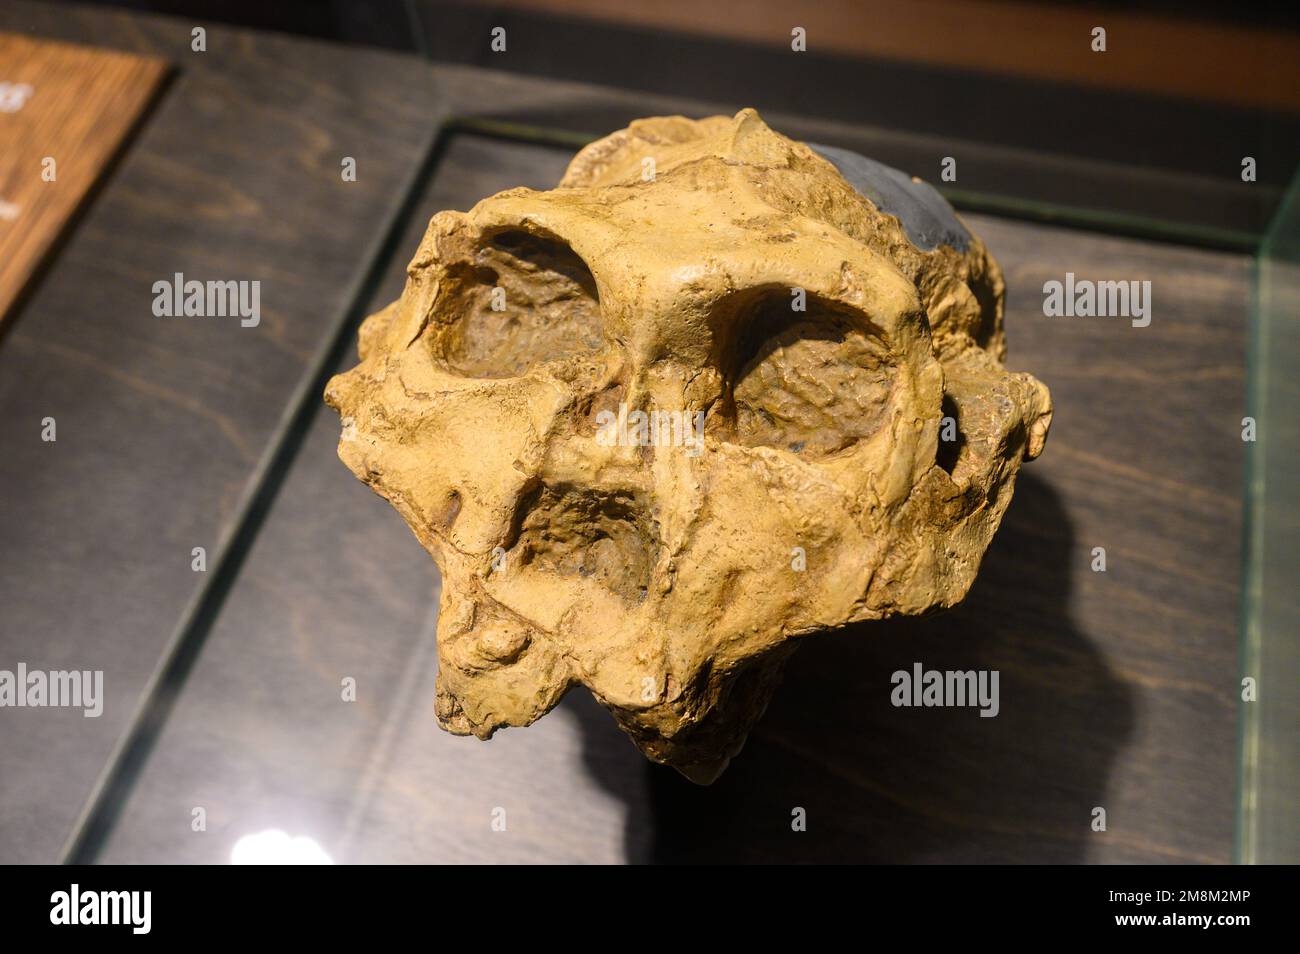 Paranthropus robustus. Schädel (Guss). Gefunden in der Swartkrans-Höhle, Südafrika. Ausgestellt im Naturkundemuseum in Brüssel, Belgien. Stockfoto